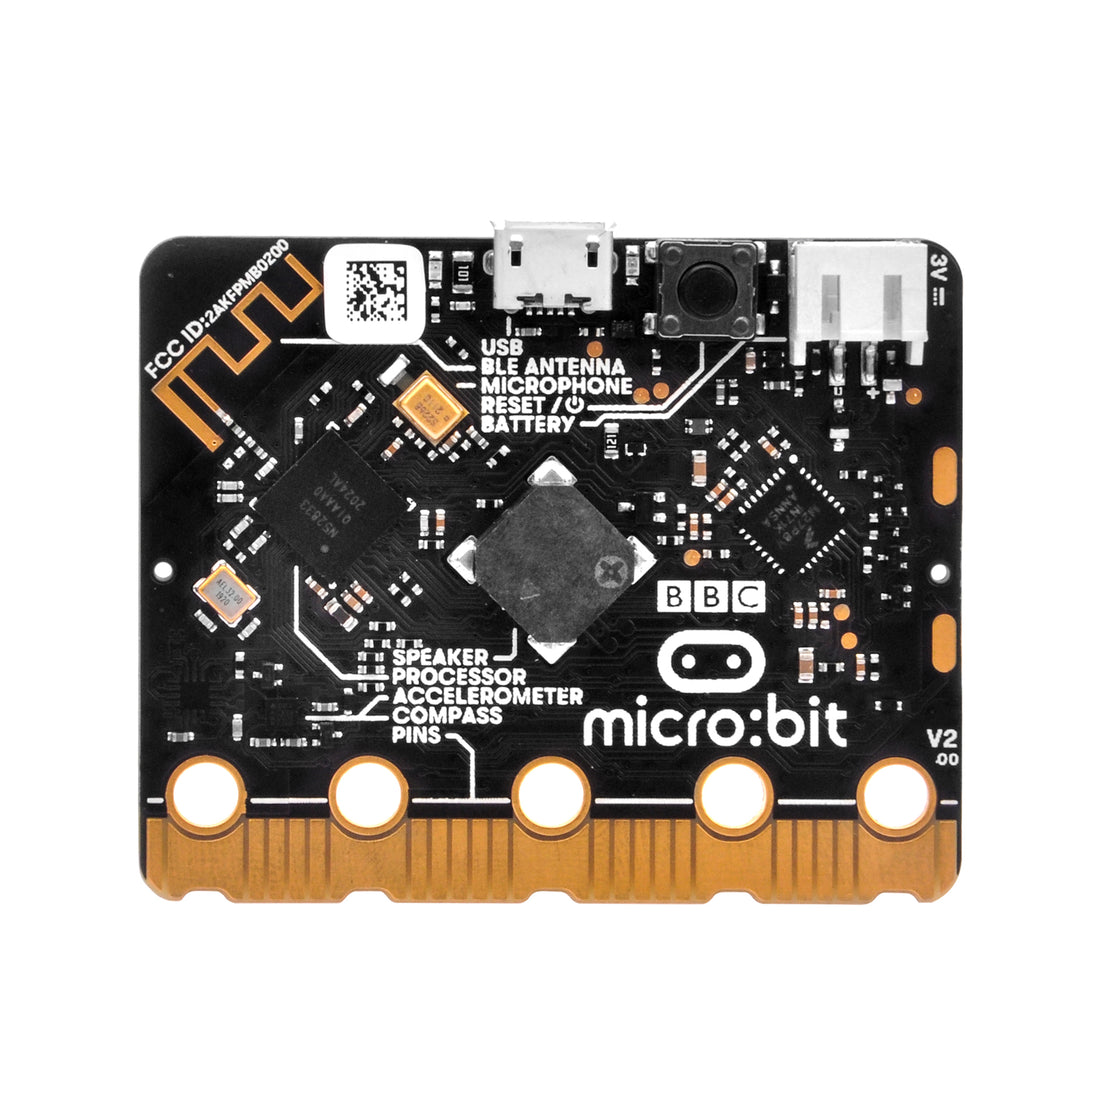 BBC micro:bit Mikrocontroller mit Bewegungserkennung, Kompass, LED-Anzeige und Bluetooth